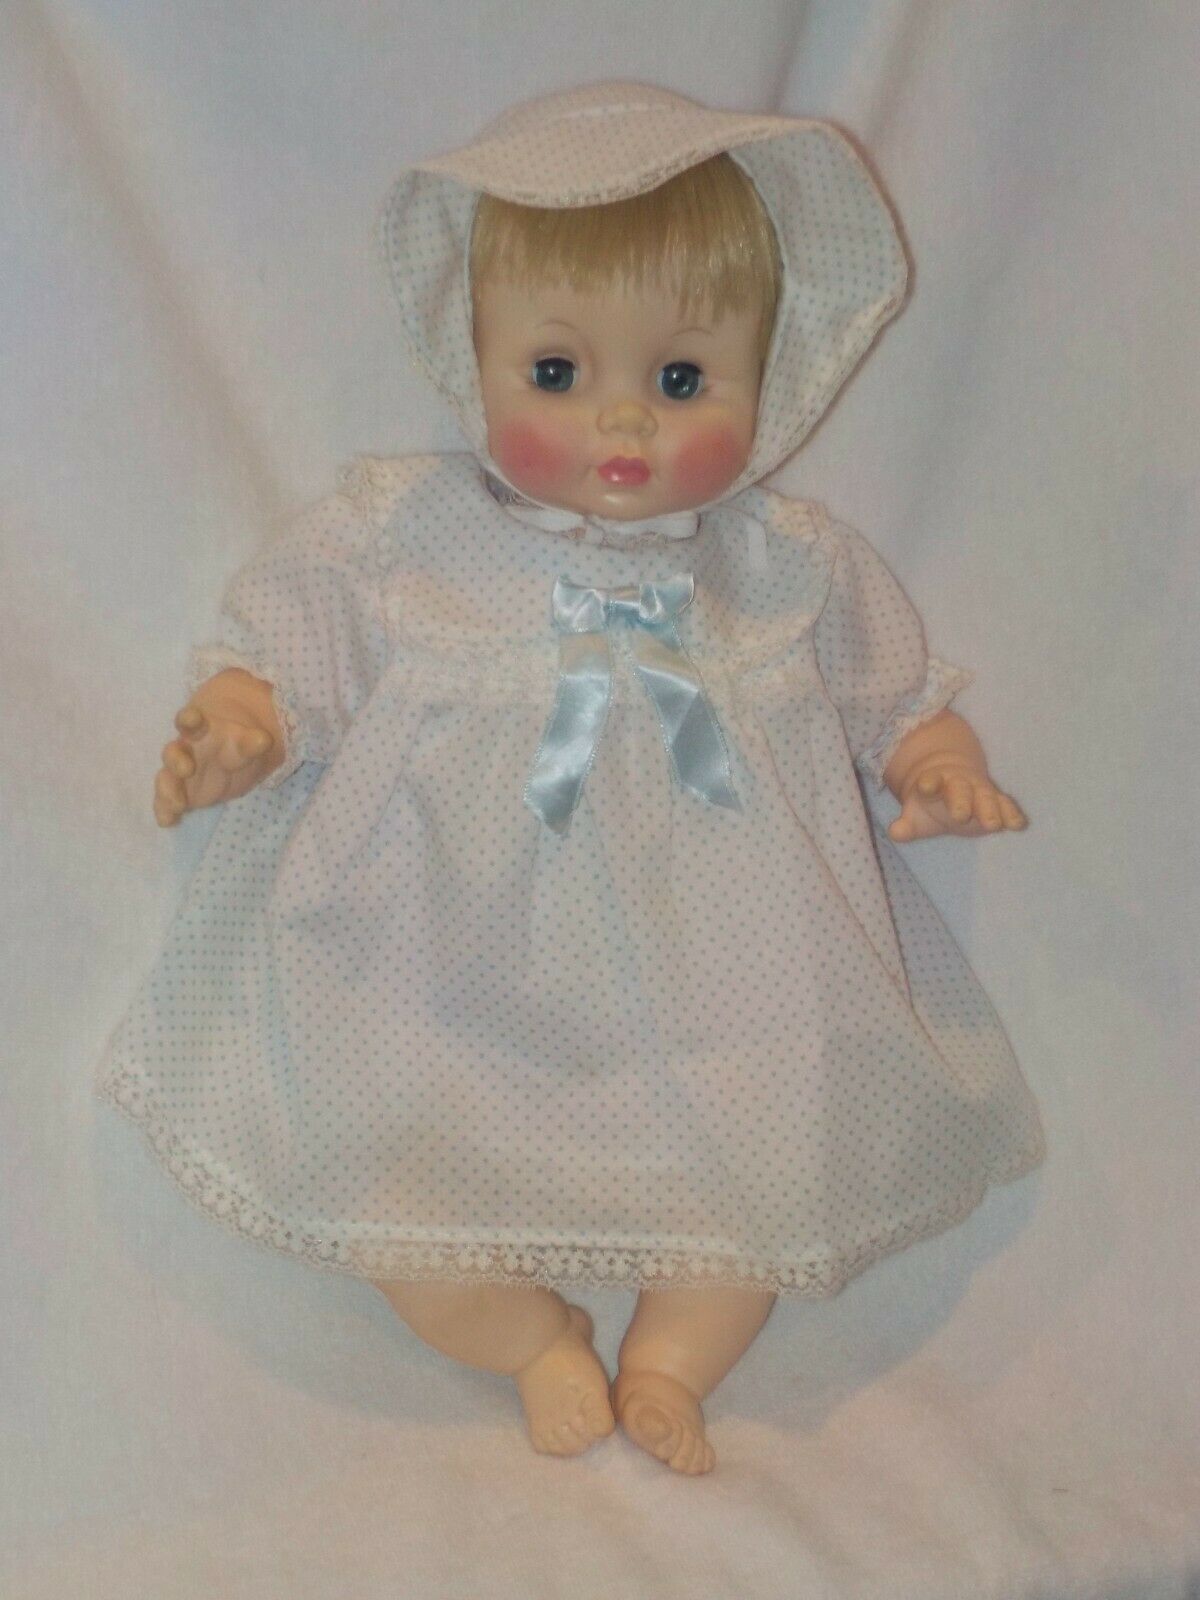 Cute 18" Effanbee Baby Doll 1989